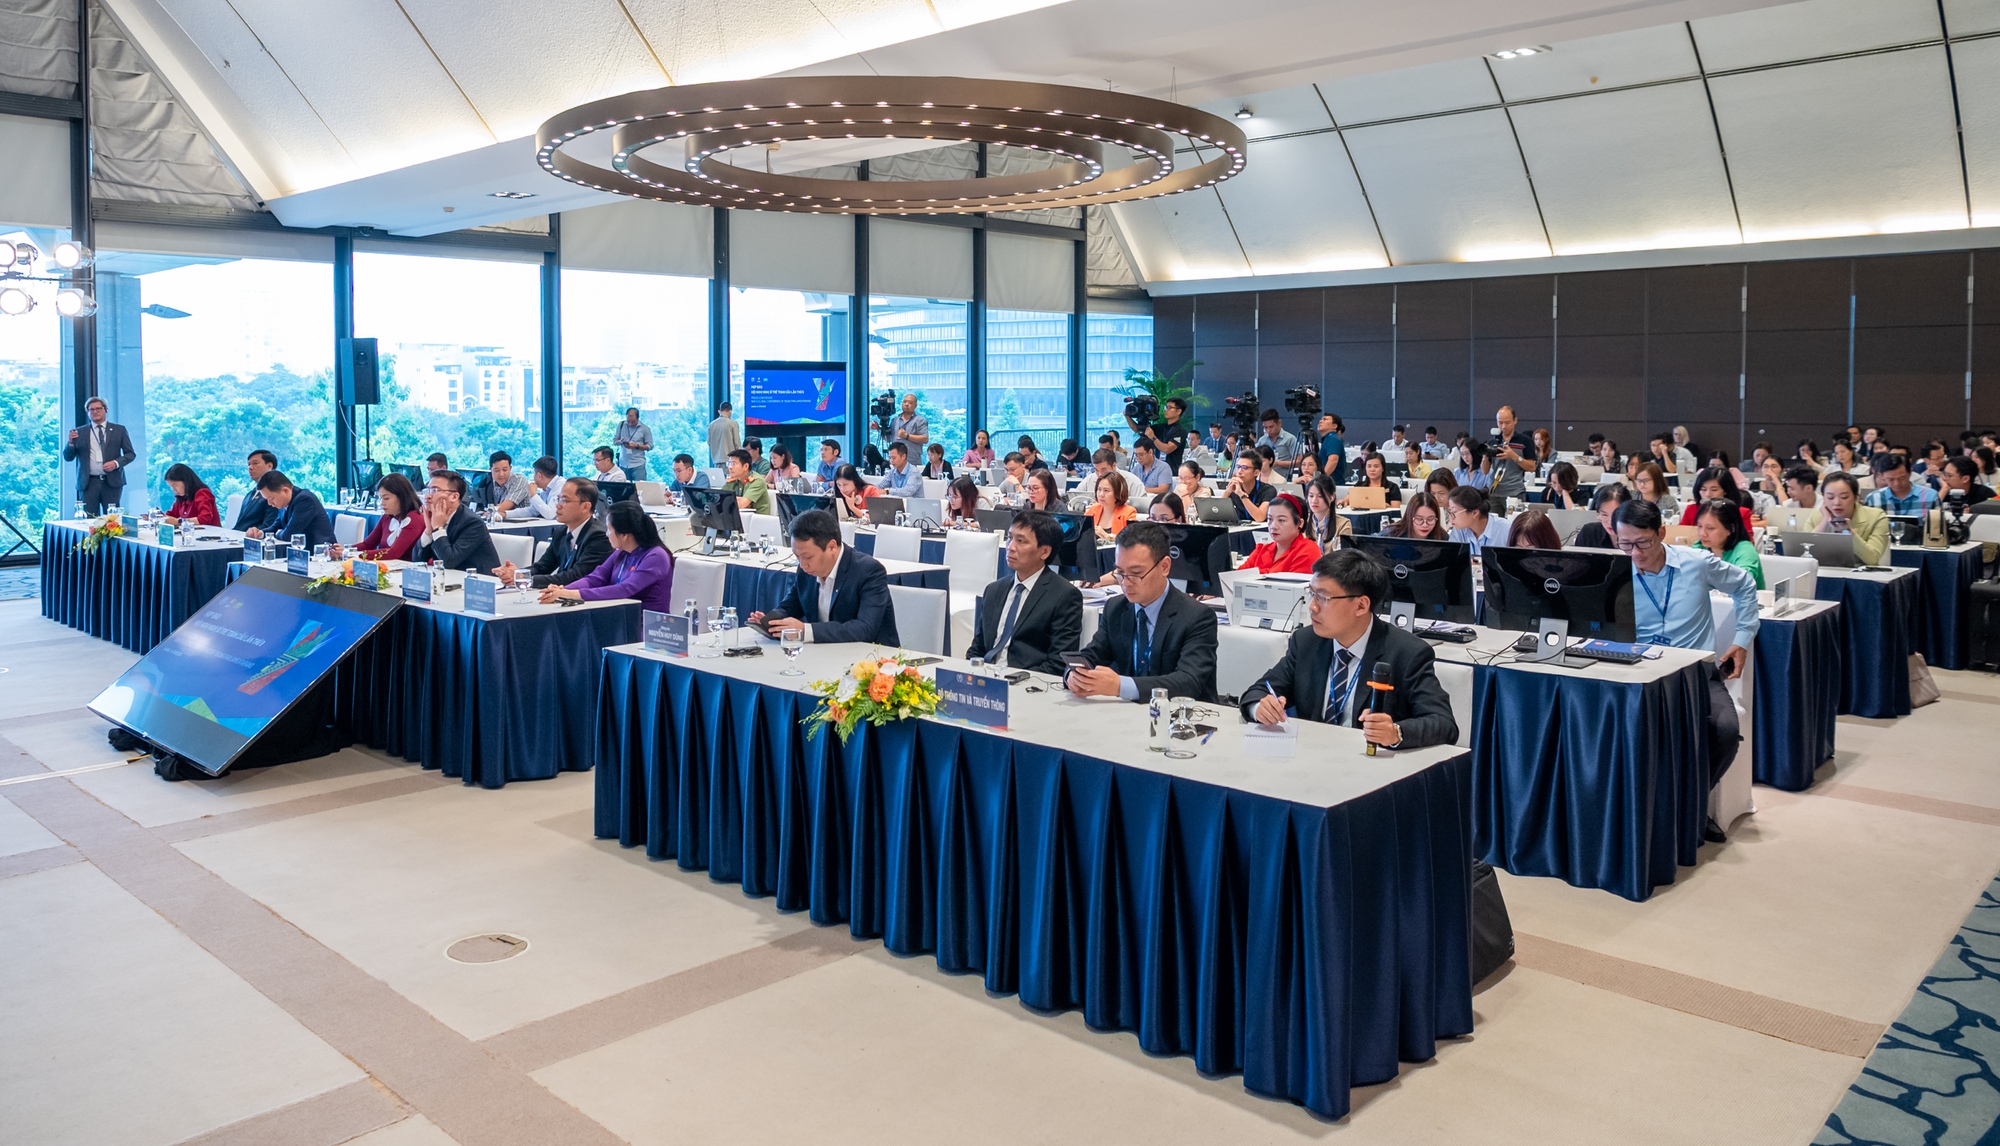 Hội nghị Nghị sĩ trẻ toàn cầu lần thứ 9: Chủ nhà Việt Nam đã tổ chức hoàn hảo - Ảnh 3.